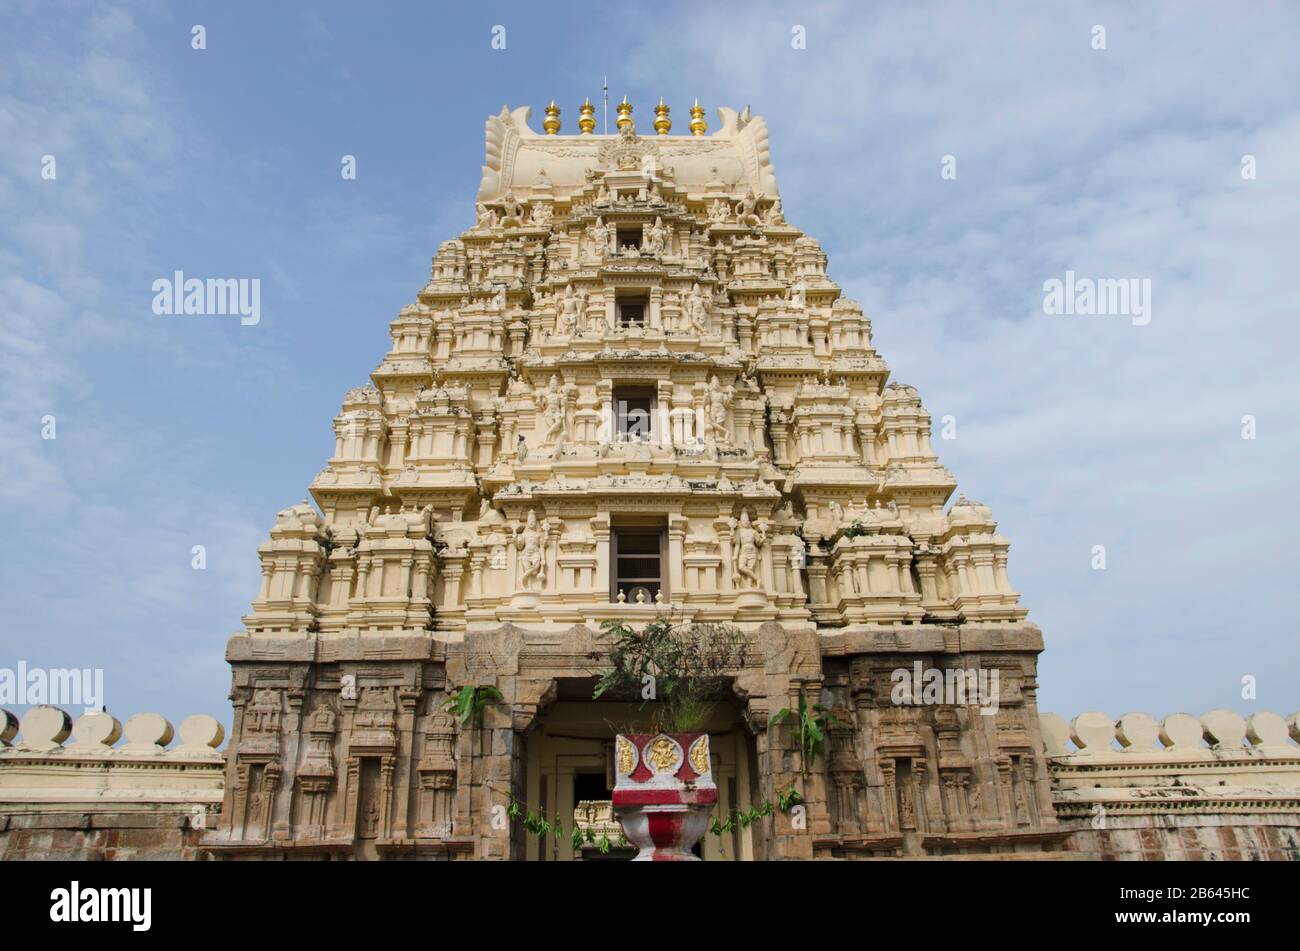 Gopuram du Temple Ranganathaswamy, situé à l'intérieur du fort, aurait été construit par Ramanuja, Srirangapatna, Karnataka, Inde Banque D'Images